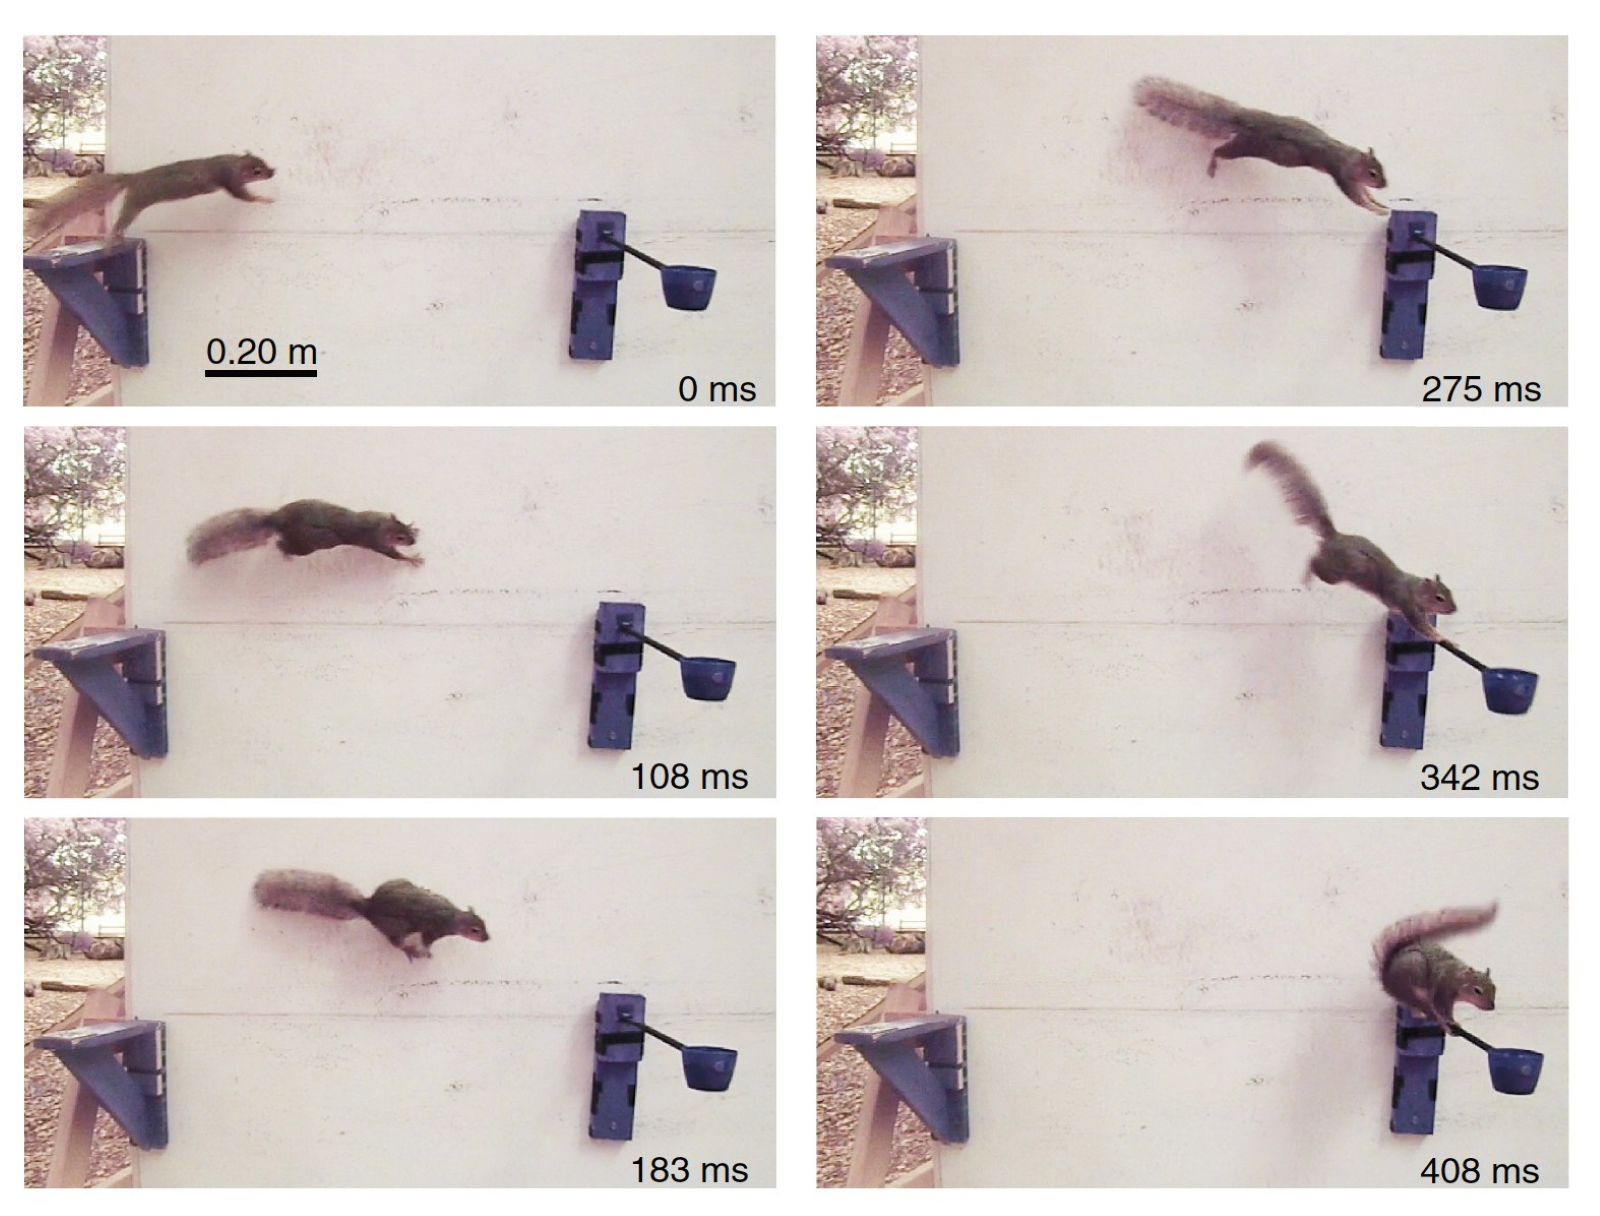 Les scientifiques cherchent à modéliser la prise de décision des écureuils pour évoluer dans leur parcours à la recherche de noisettes. © US Army